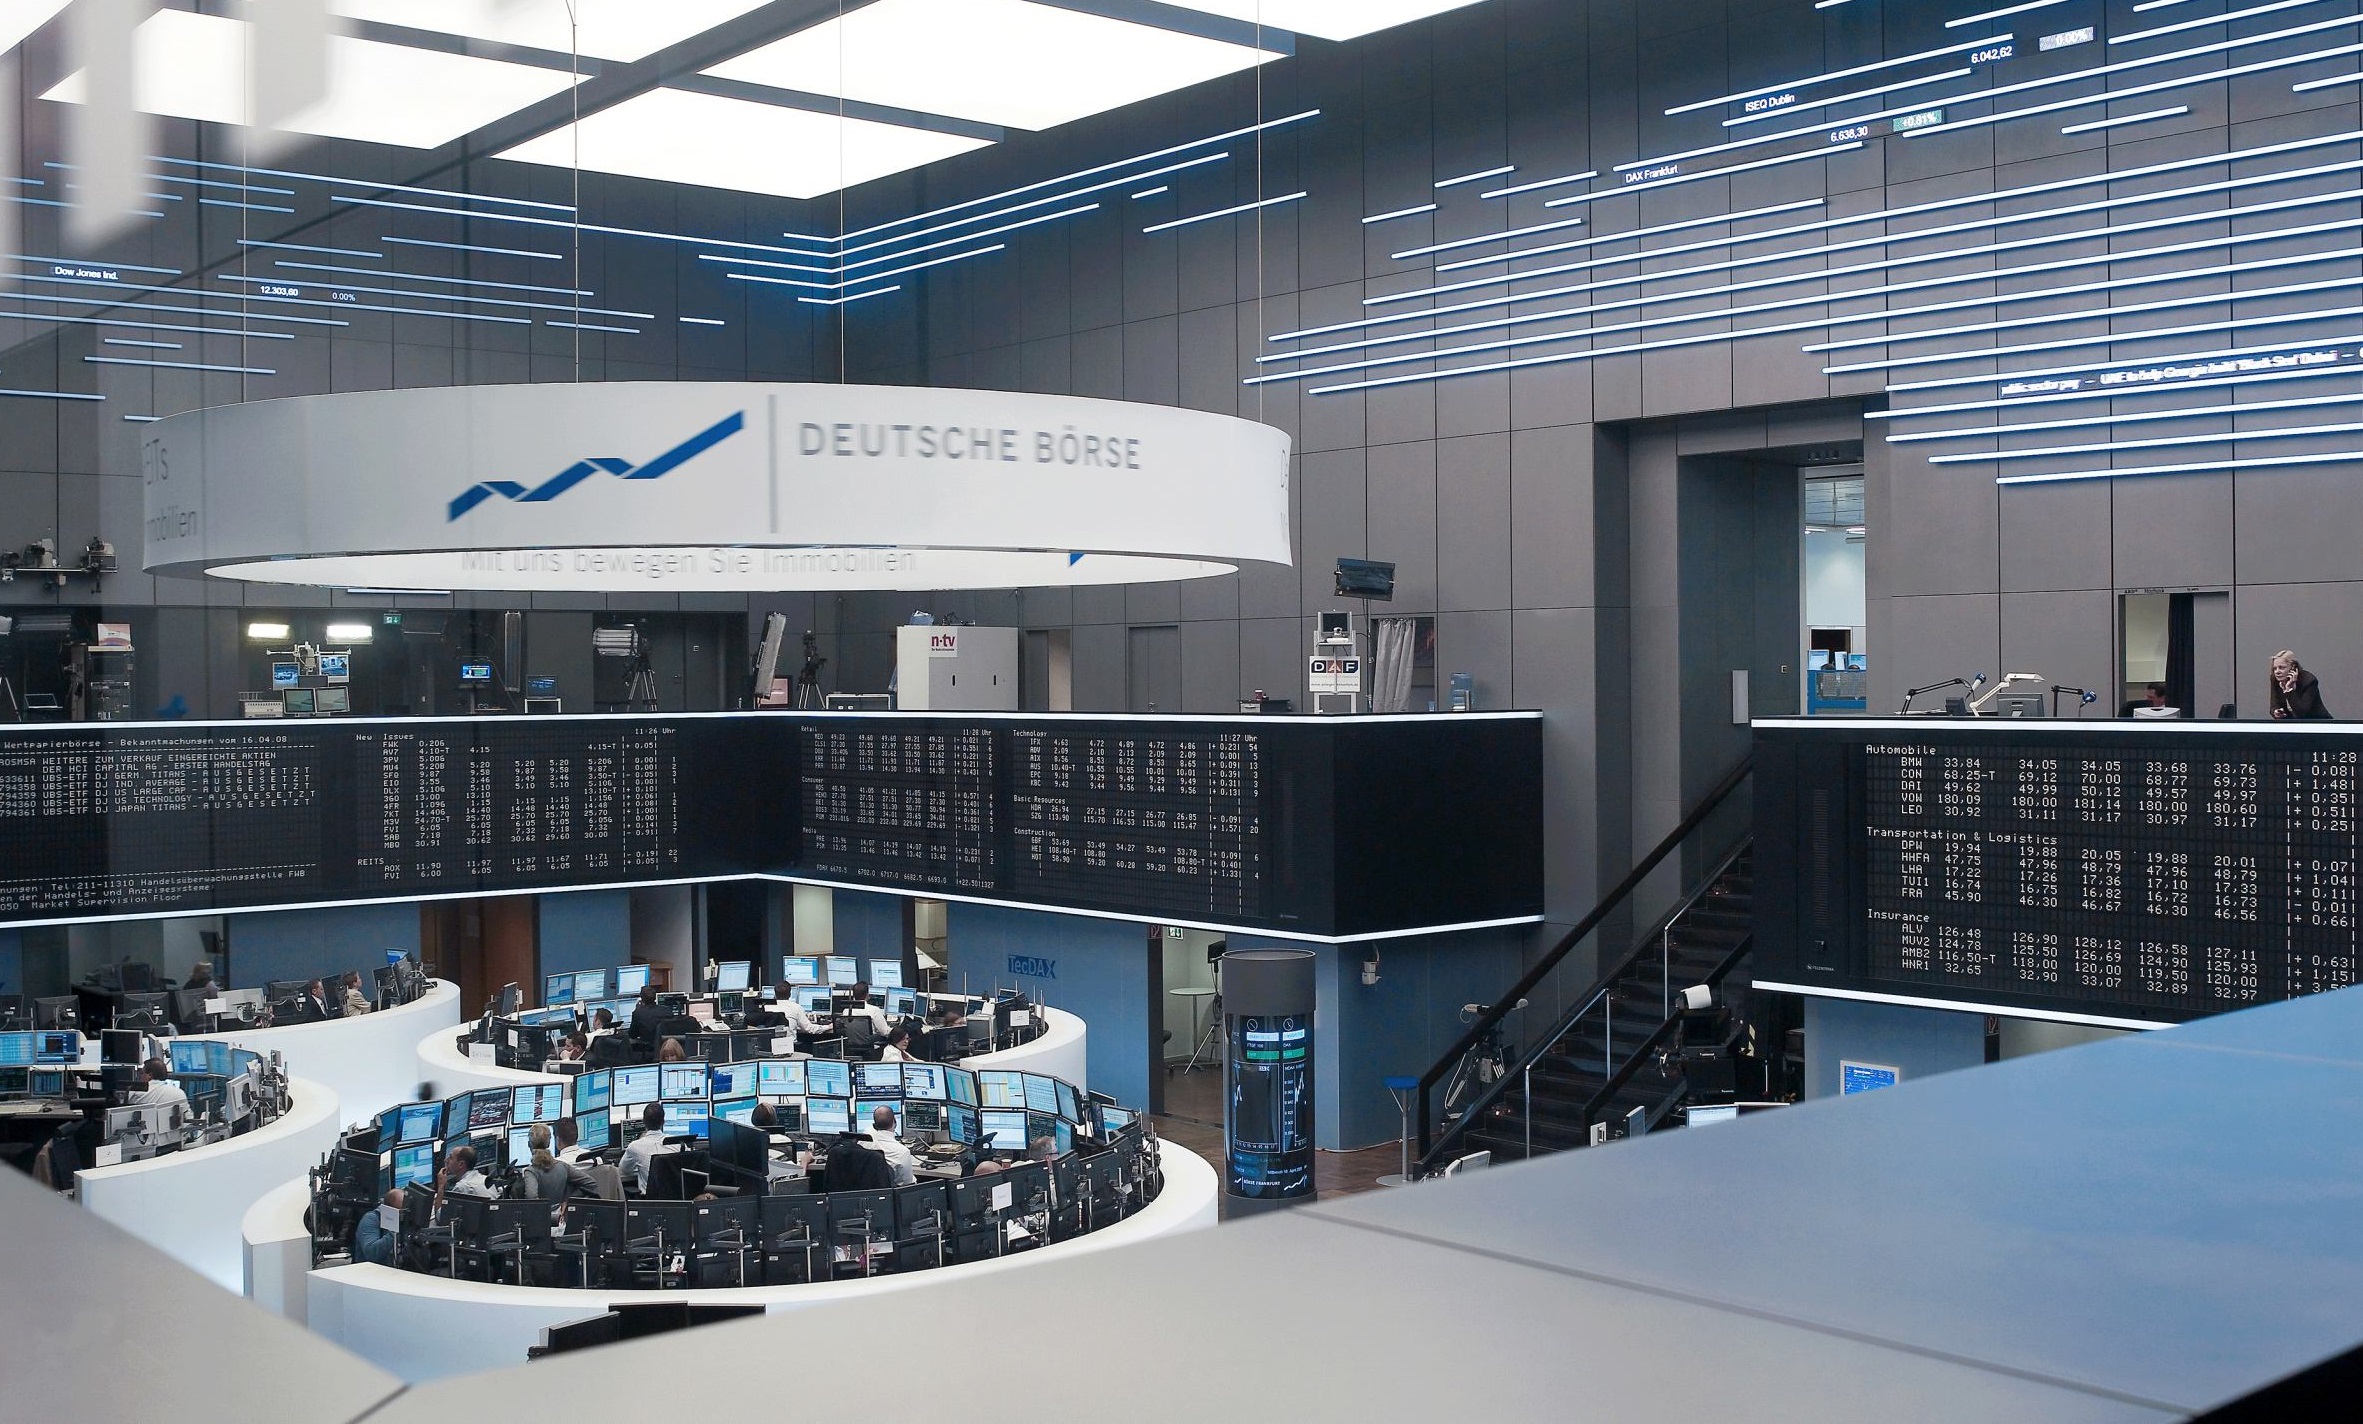 Deutsche Börse achieves net profit growth of 6% for 2019